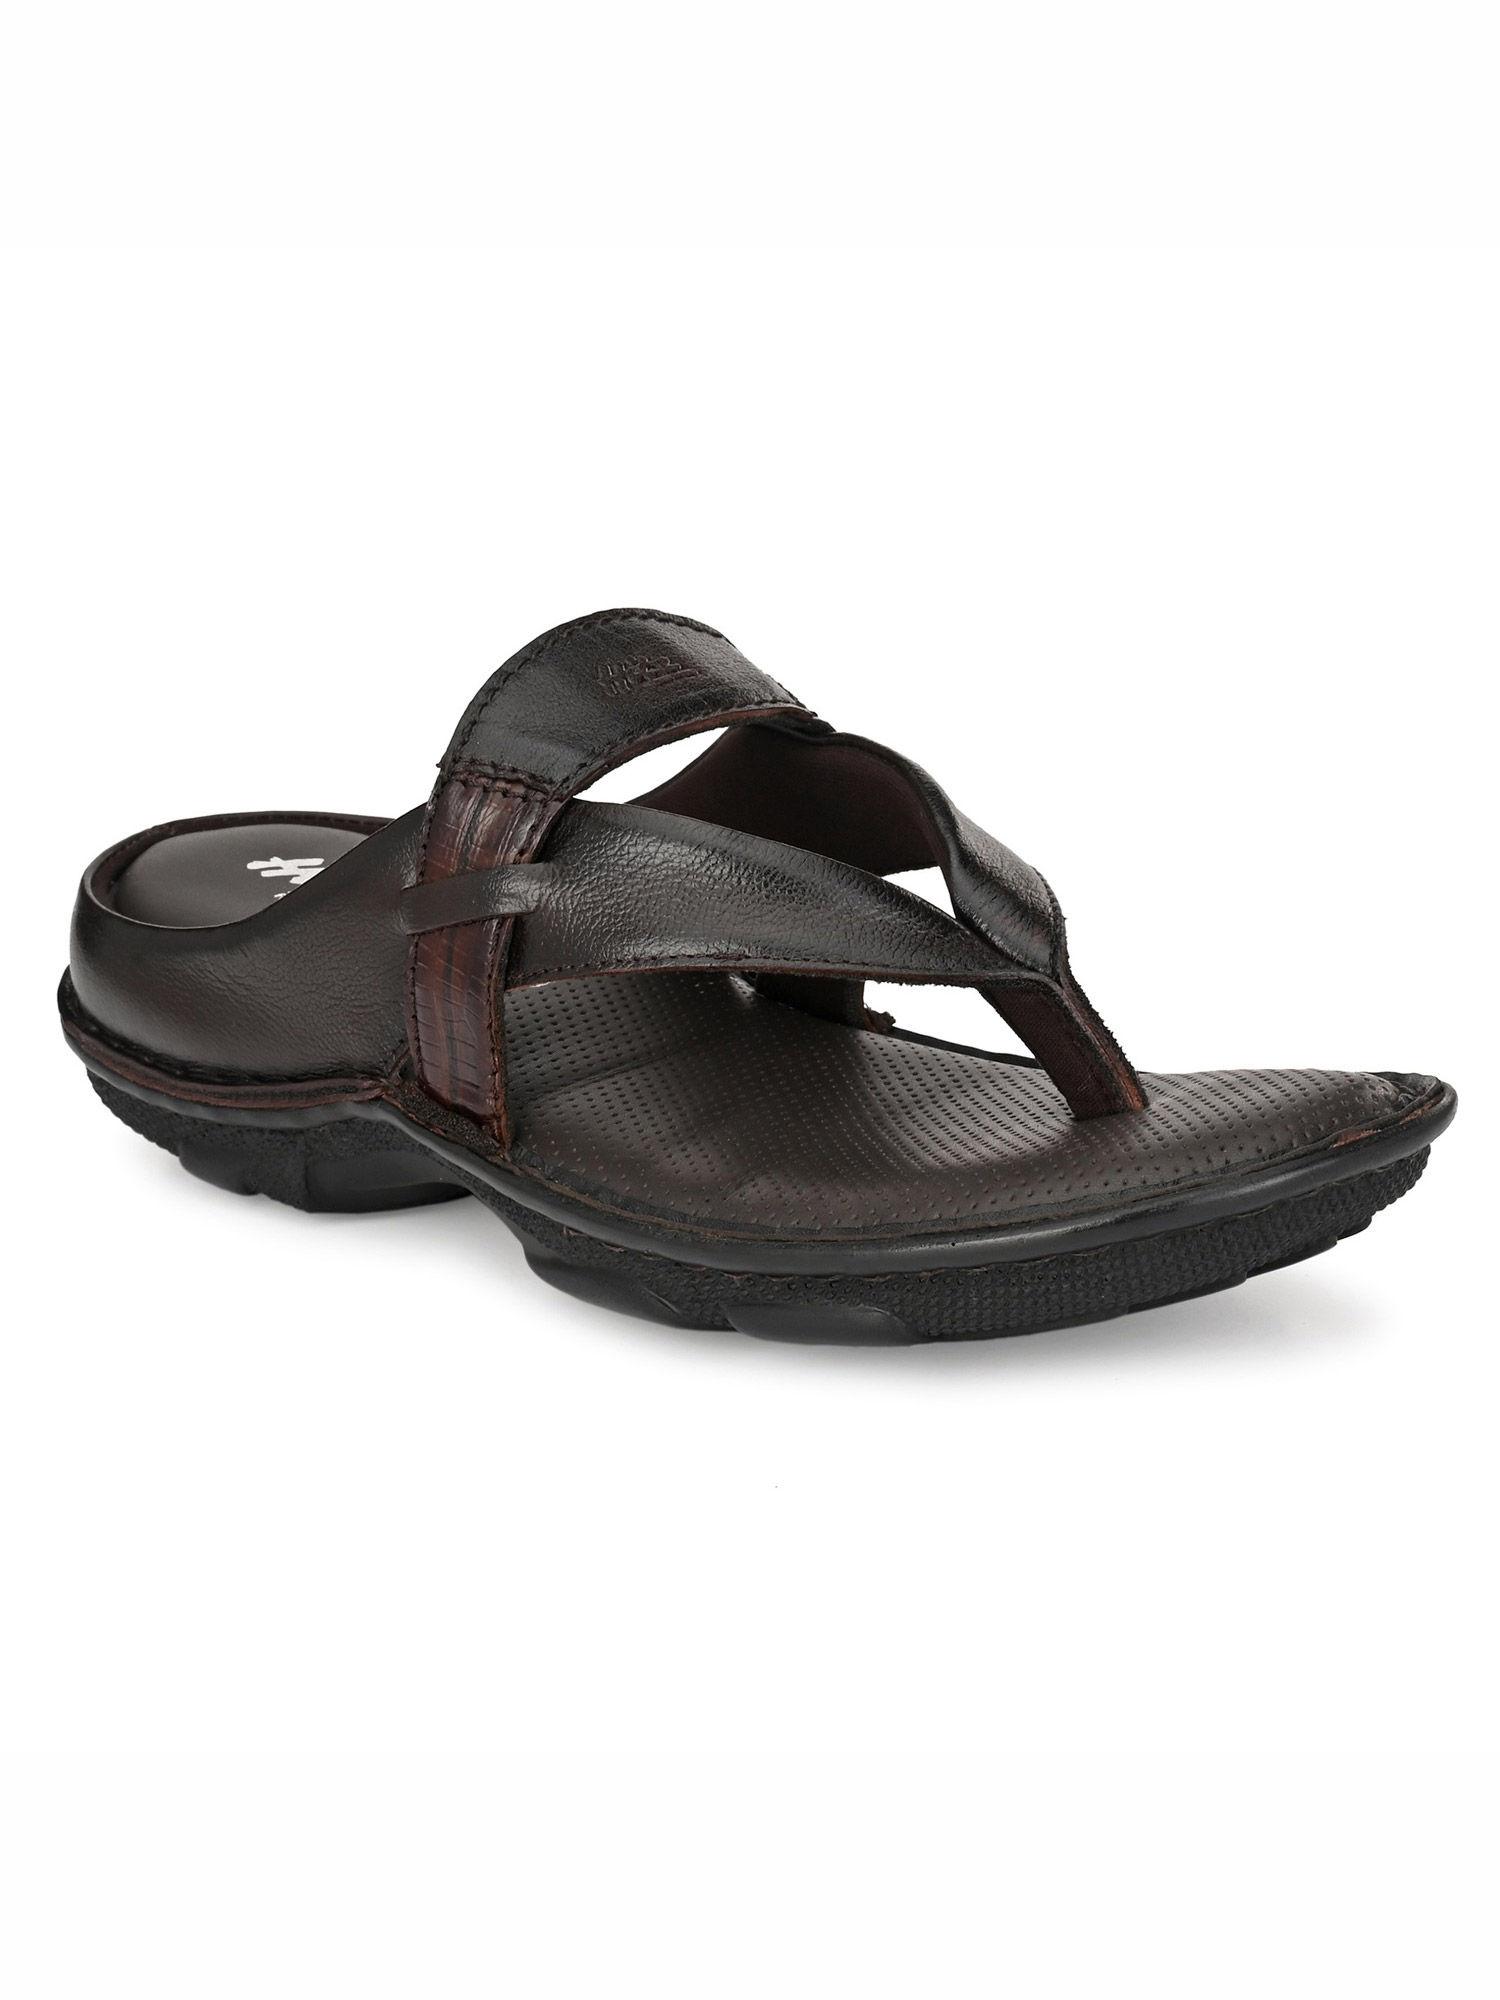 men's brown leather open toe indoor outdoor slippers